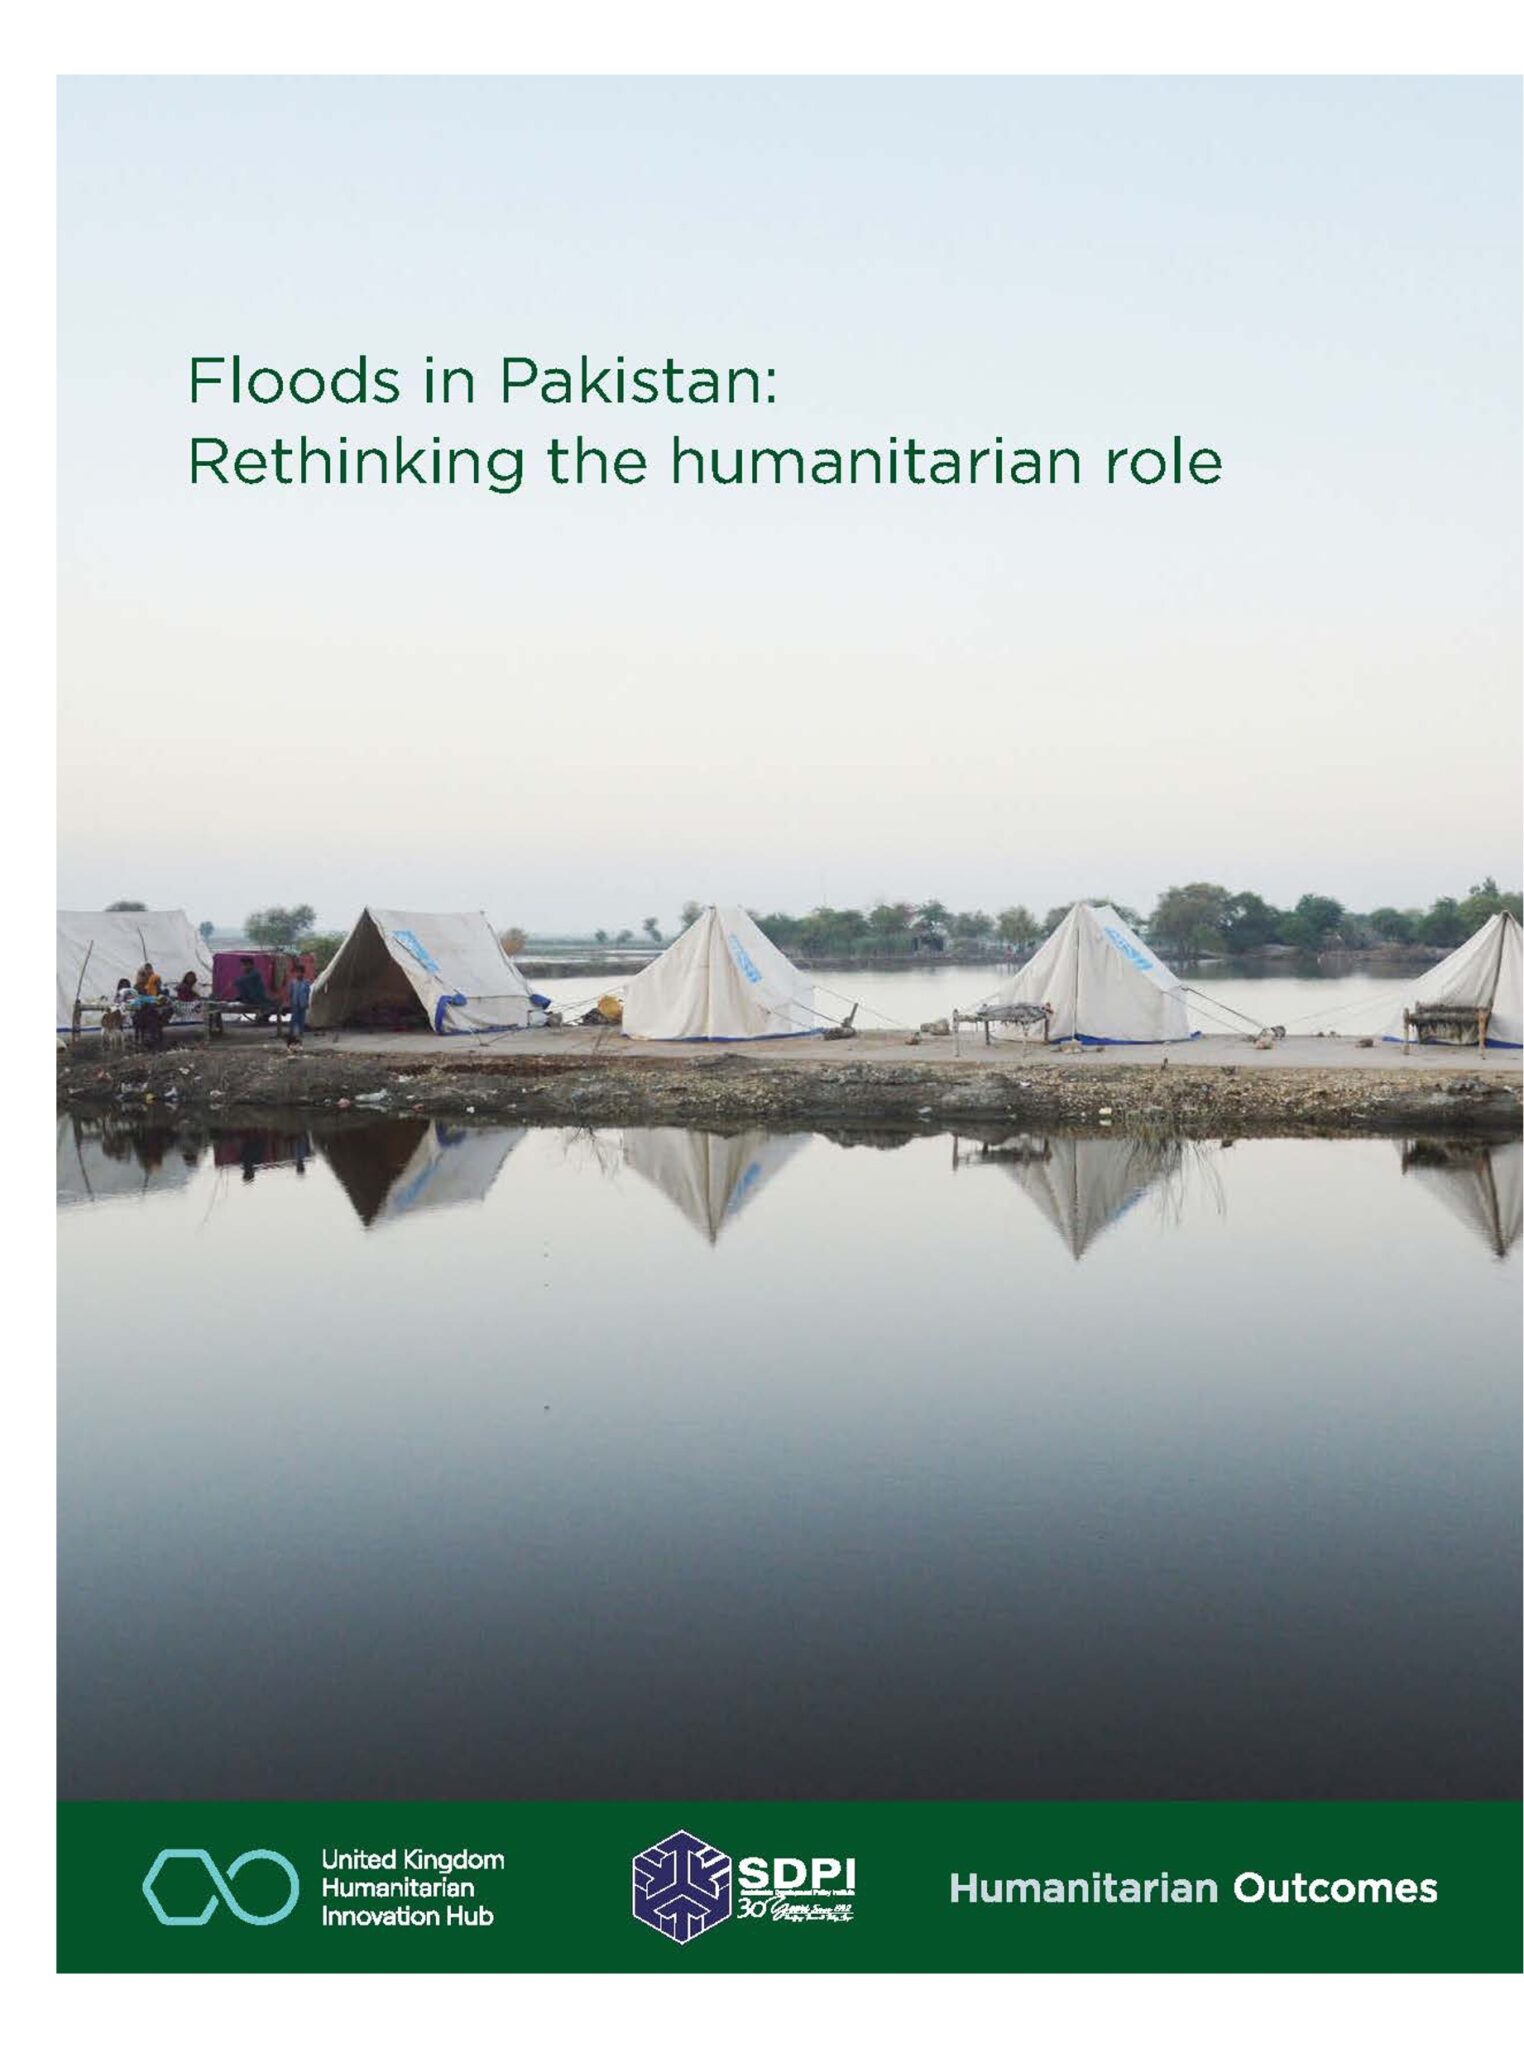 case study of humanitarian response